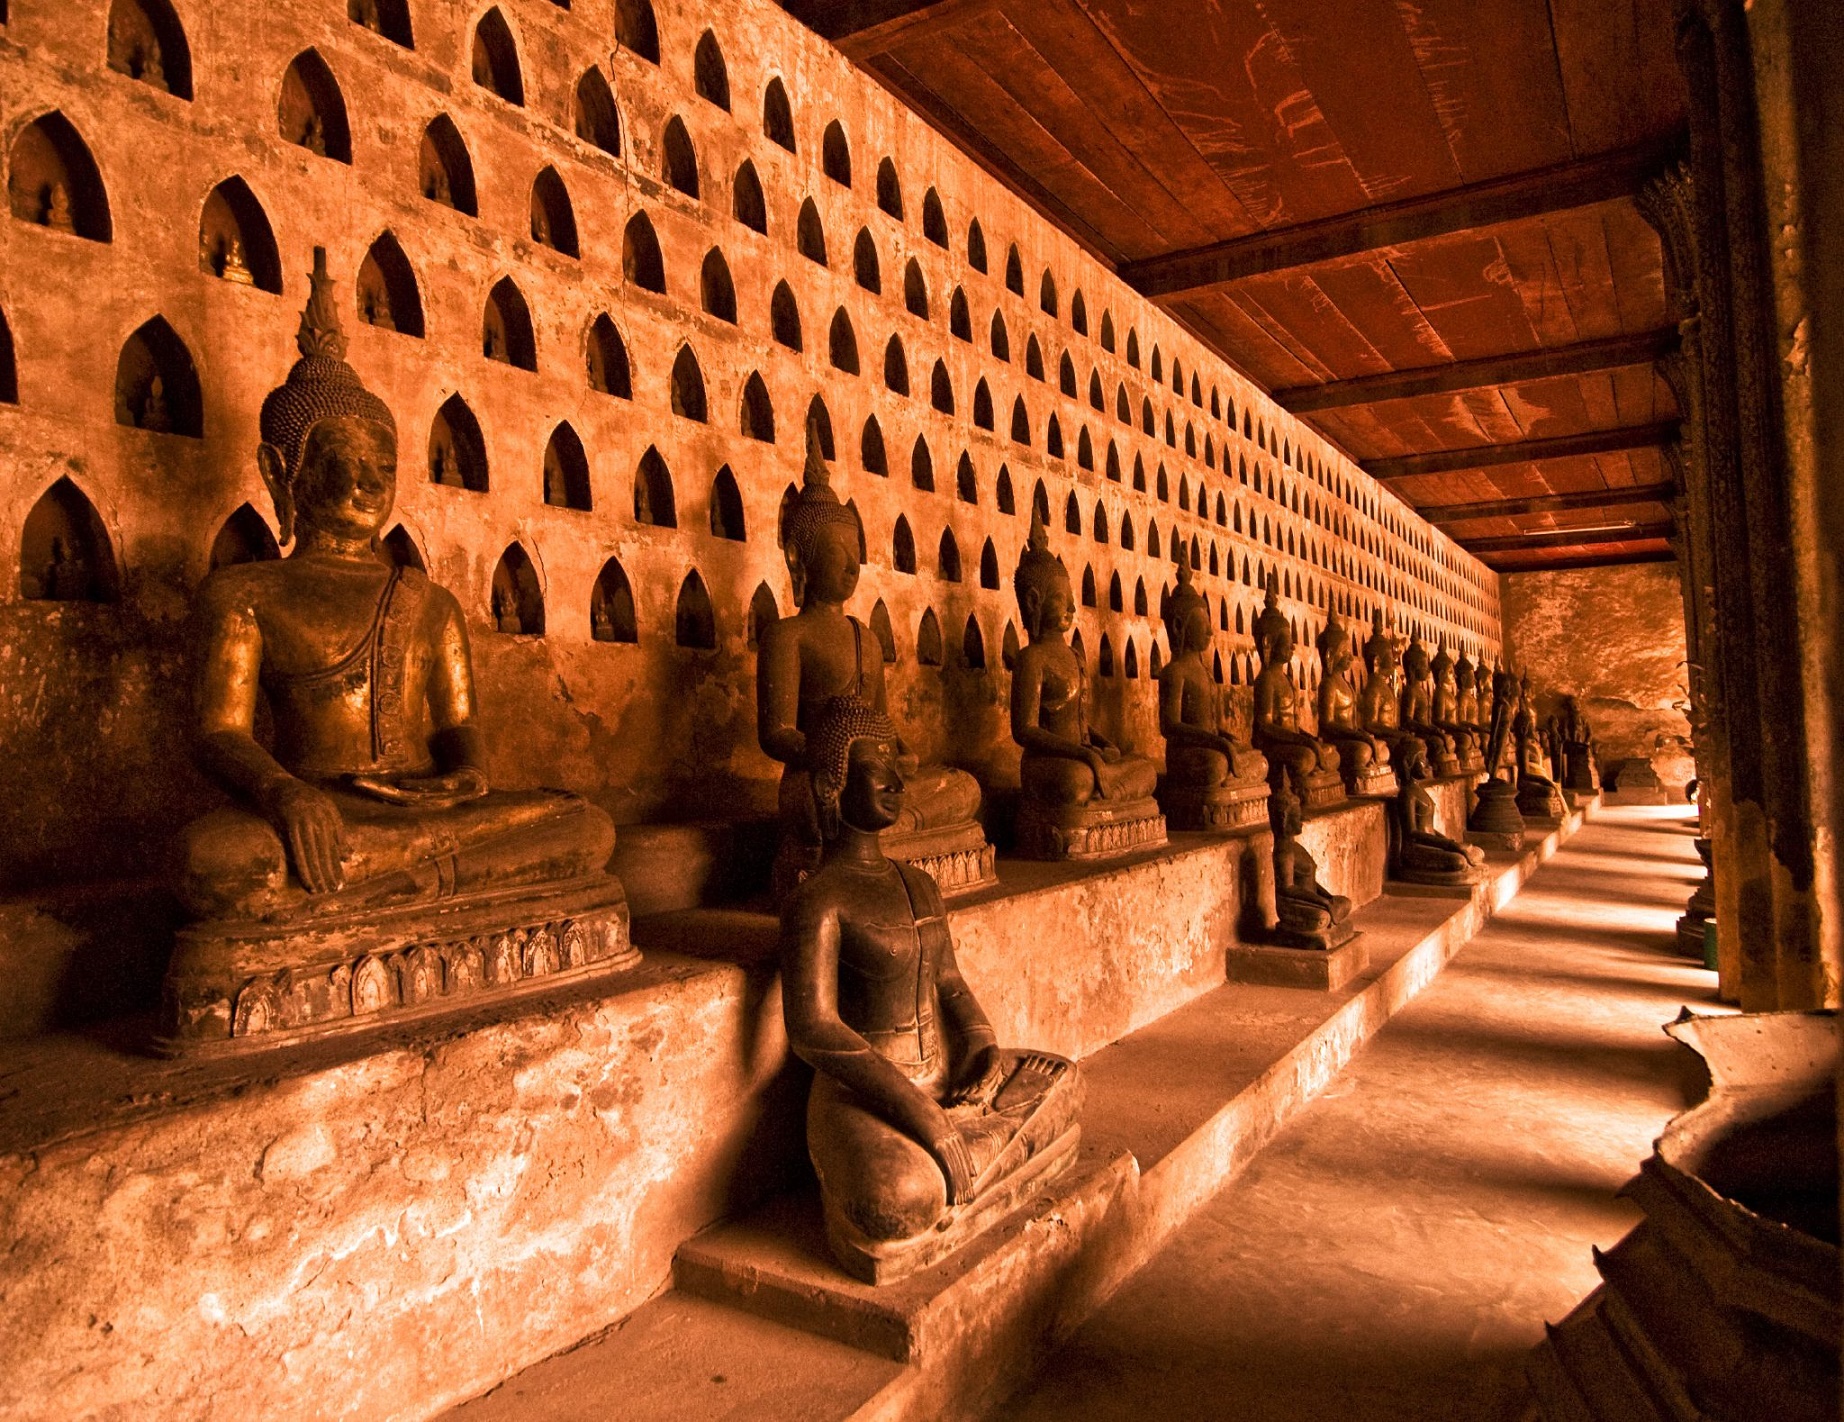 Statues of Buddhas in Wat Si Saket